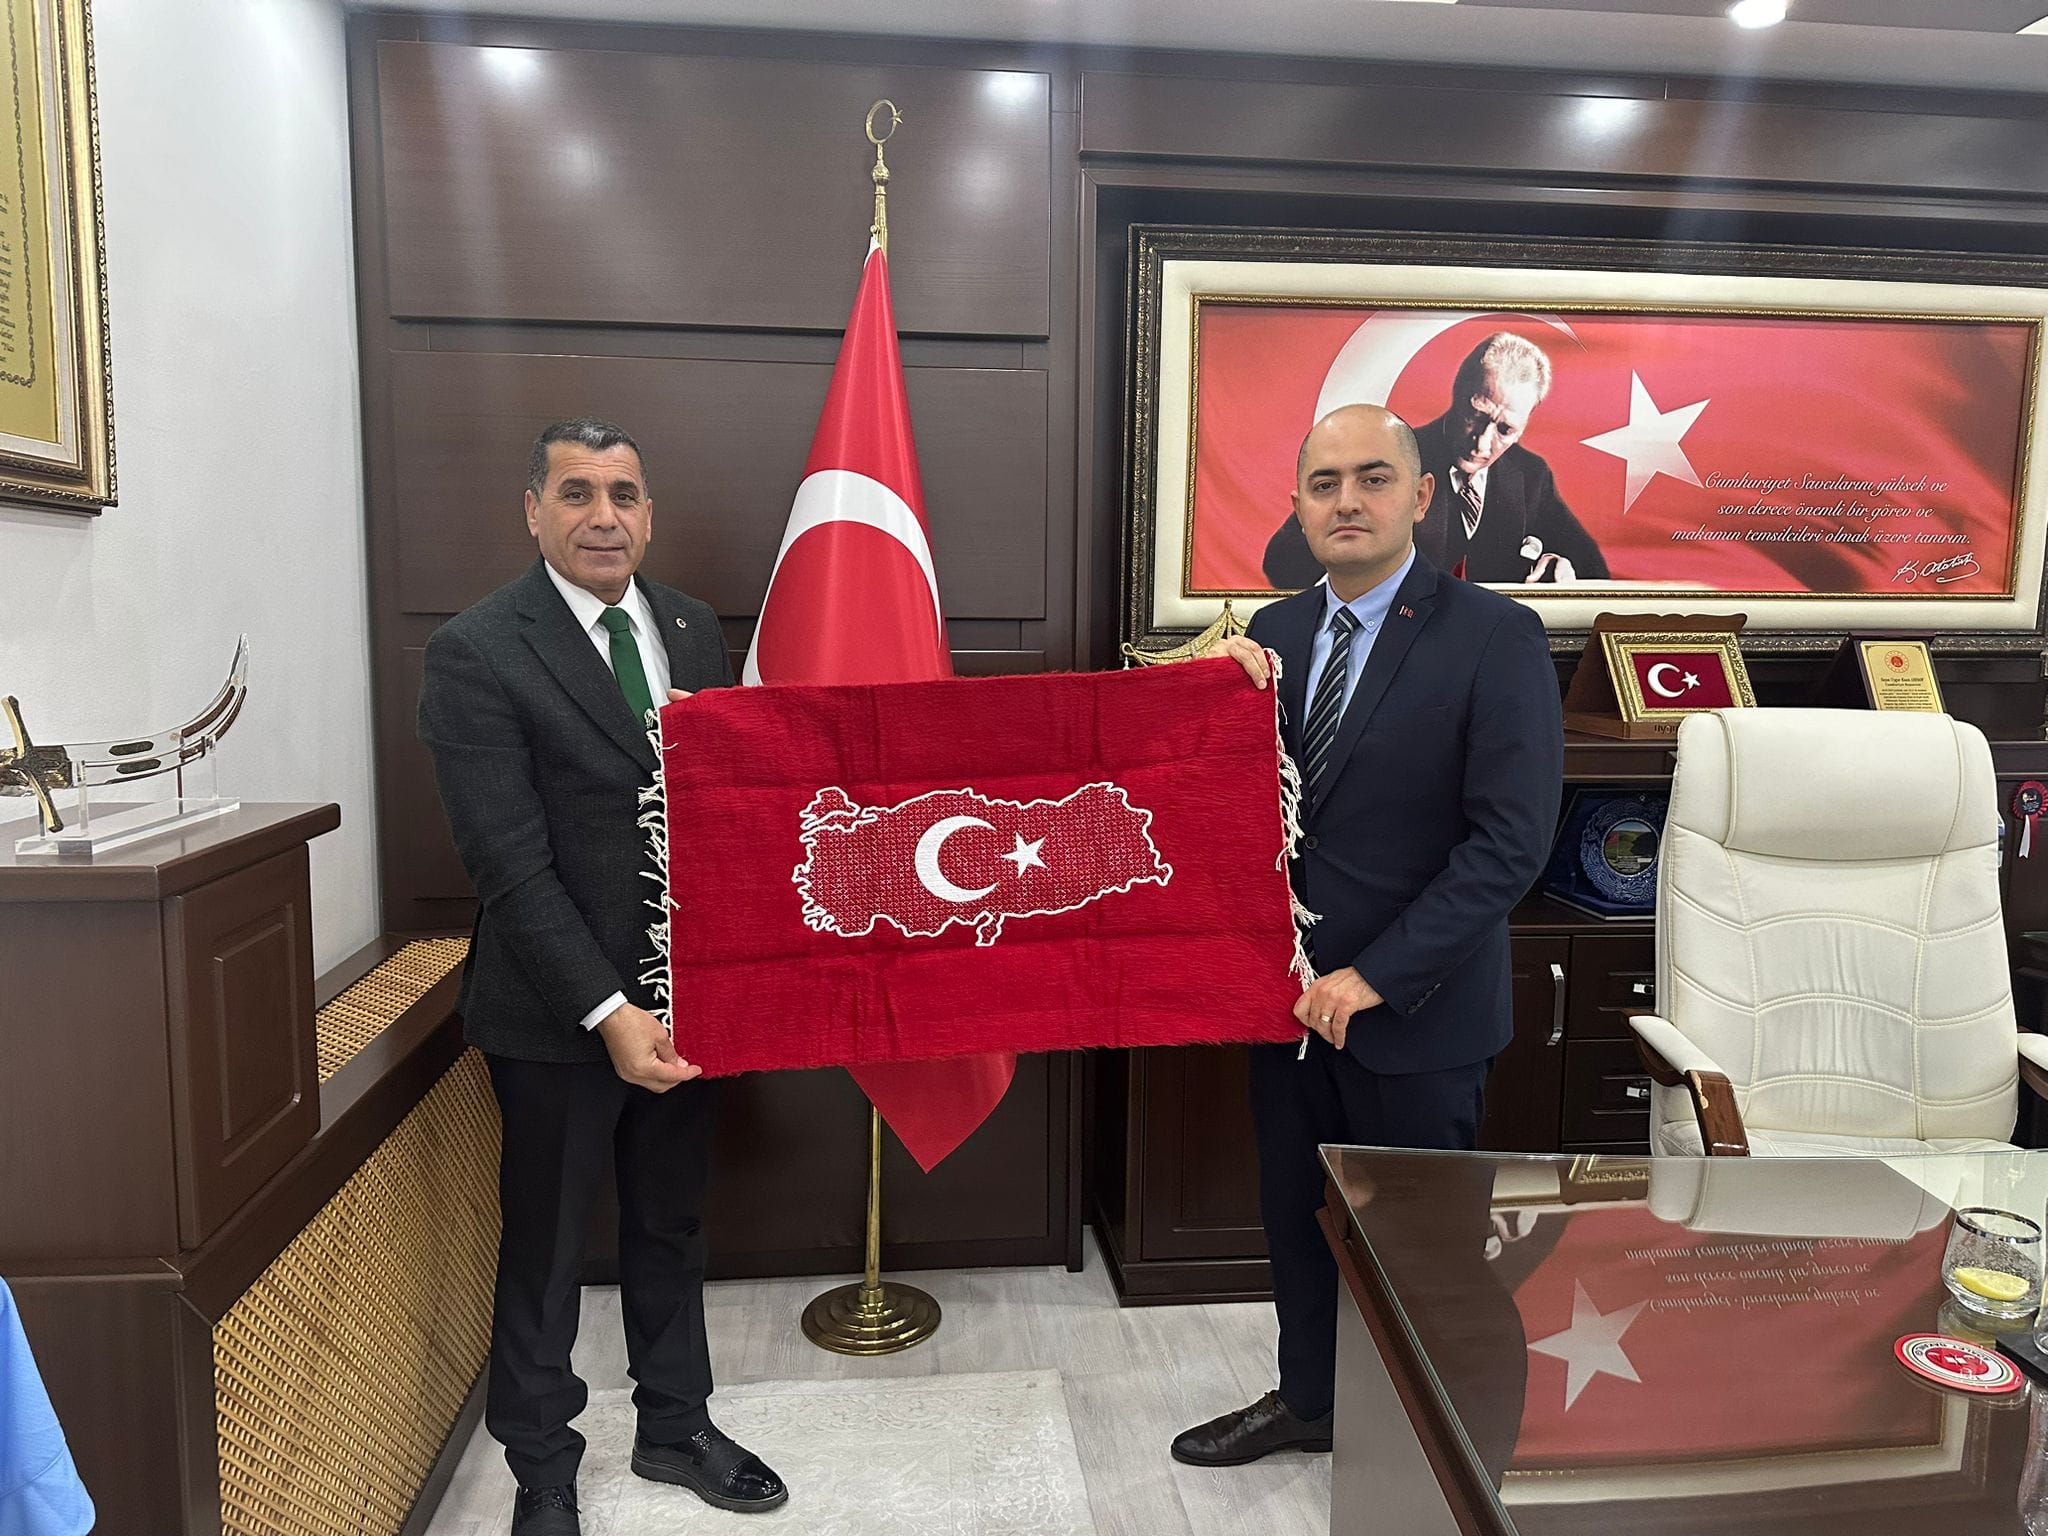 Osmaniye Cumhuriyet Başsavcımız Sayın Uygur Kaan ARISOY'u Makamında ziyaret ederek Çalışmalarımız hakkında bilgi Alışverişinde bulunduk